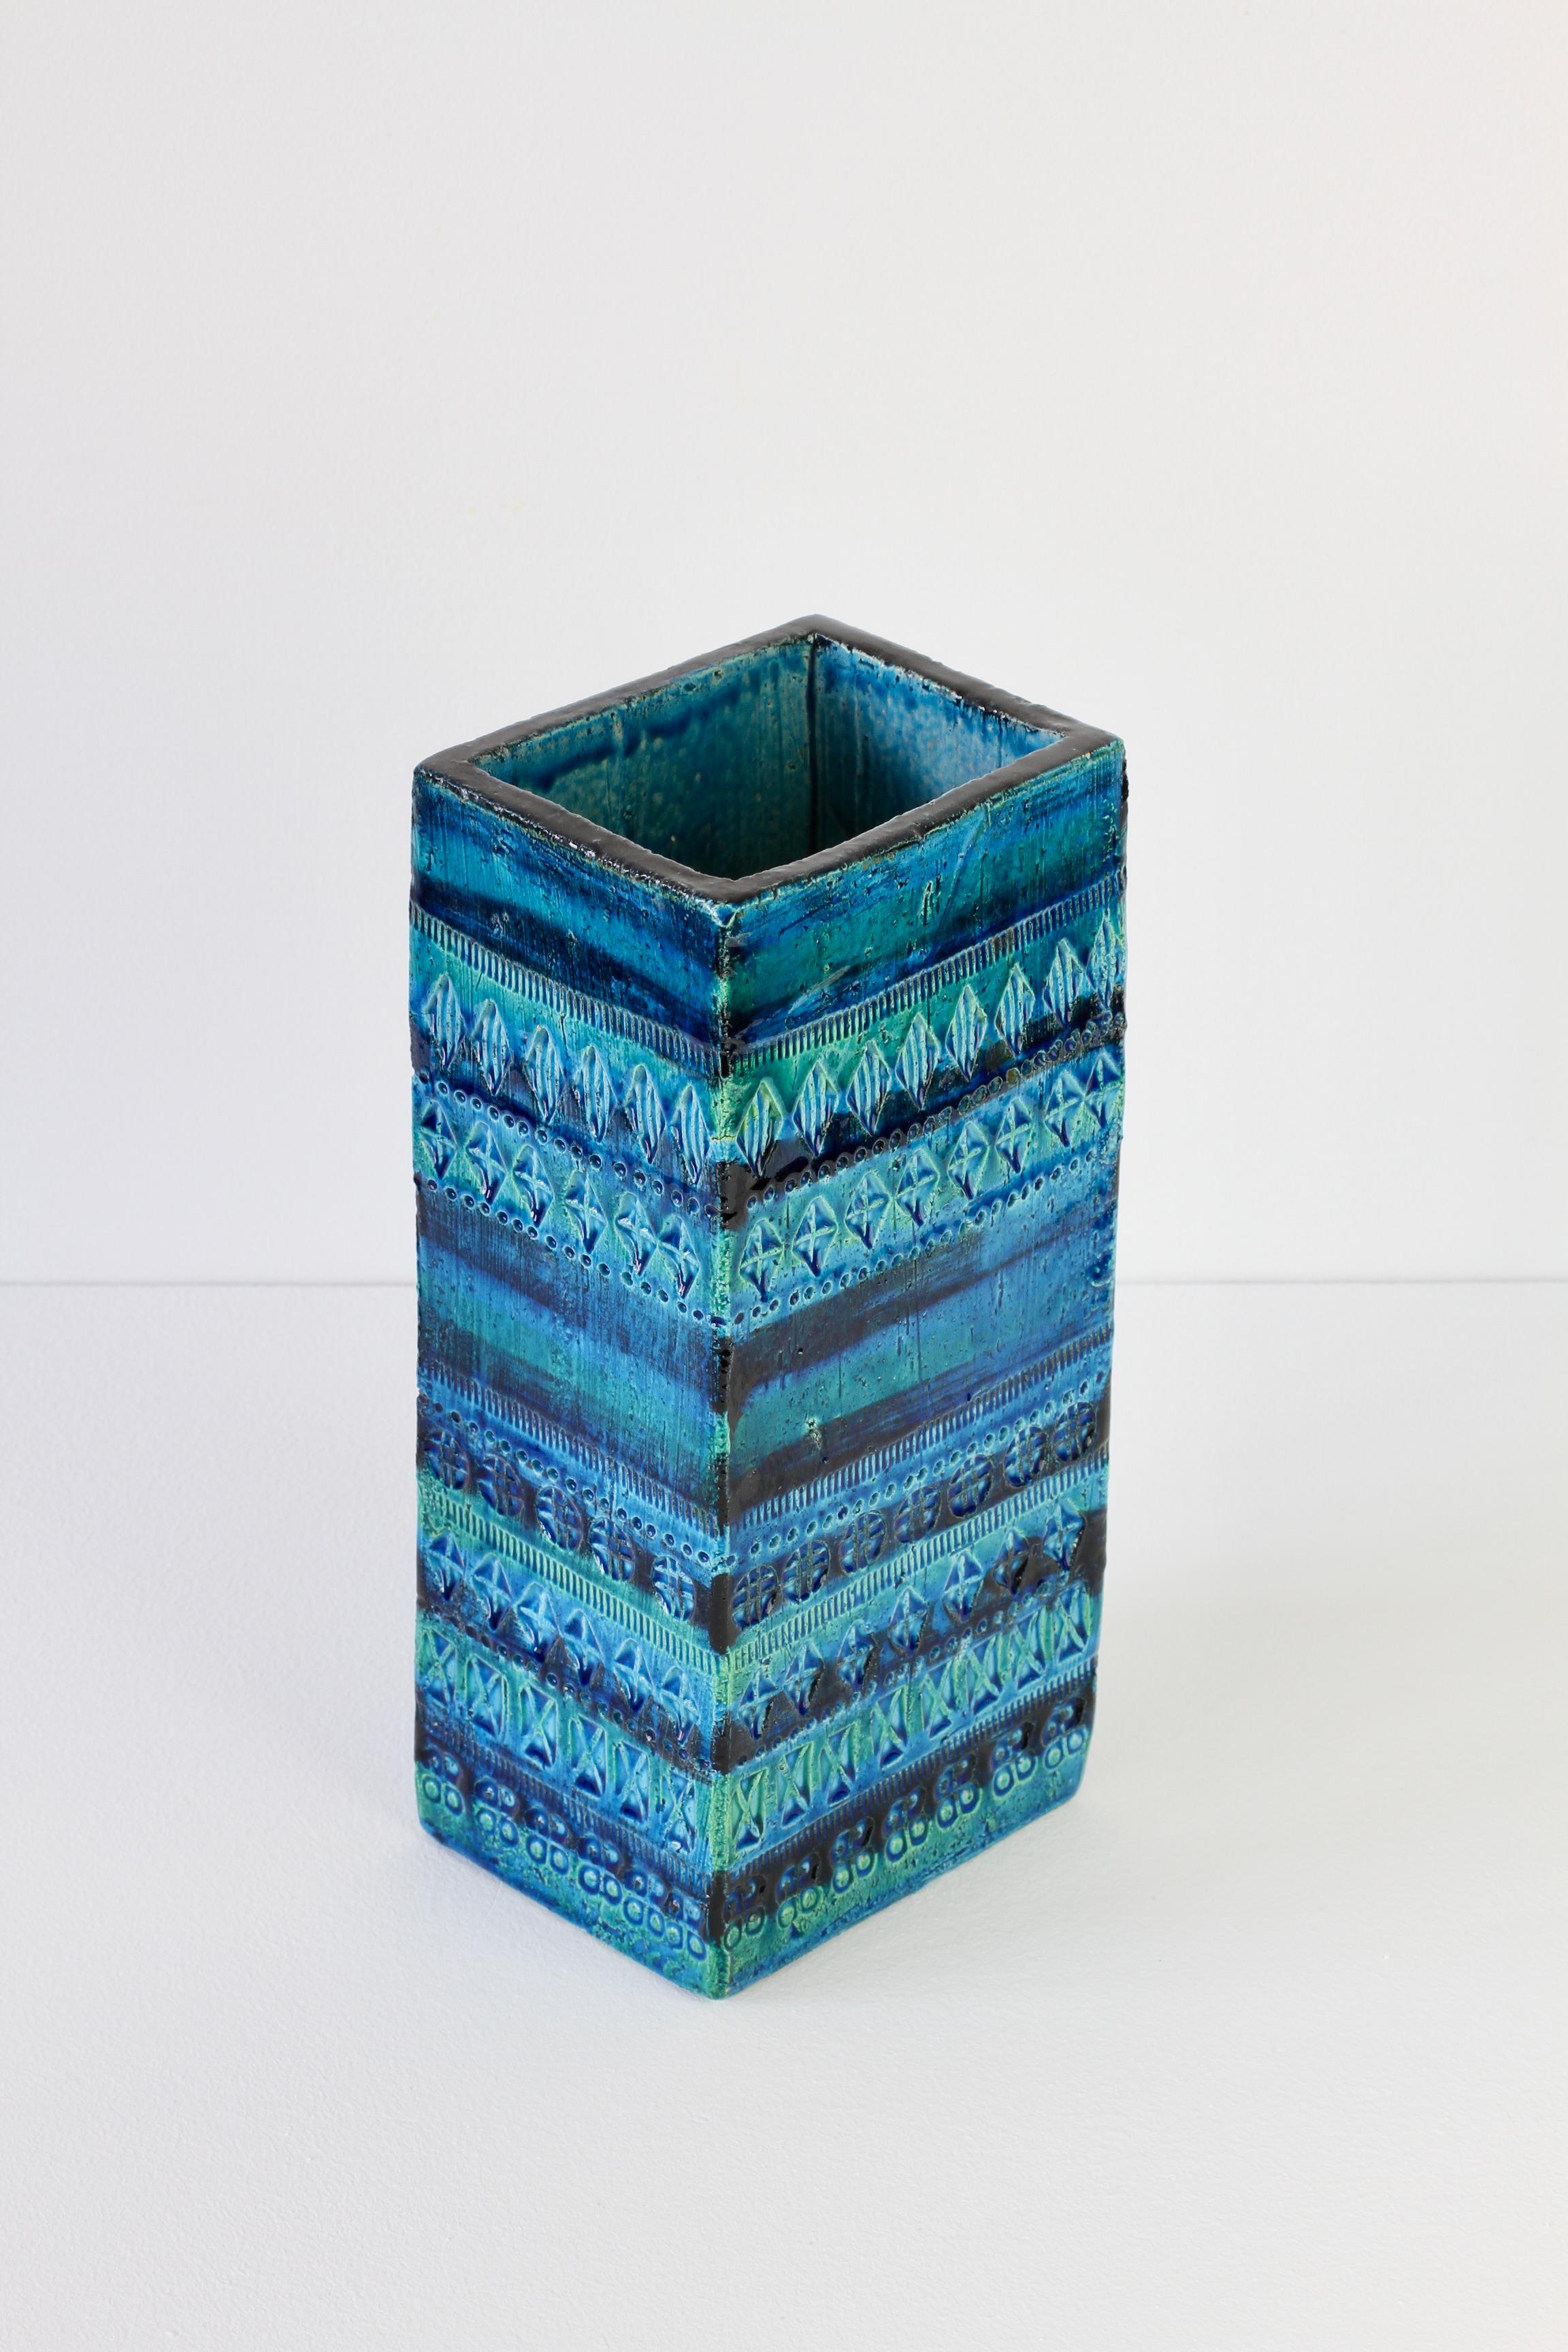 Huge Italian Vintage Ceramic Rhimini Blue Vase Aldo Londi for Bitossi, C. 1960 For Sale 4